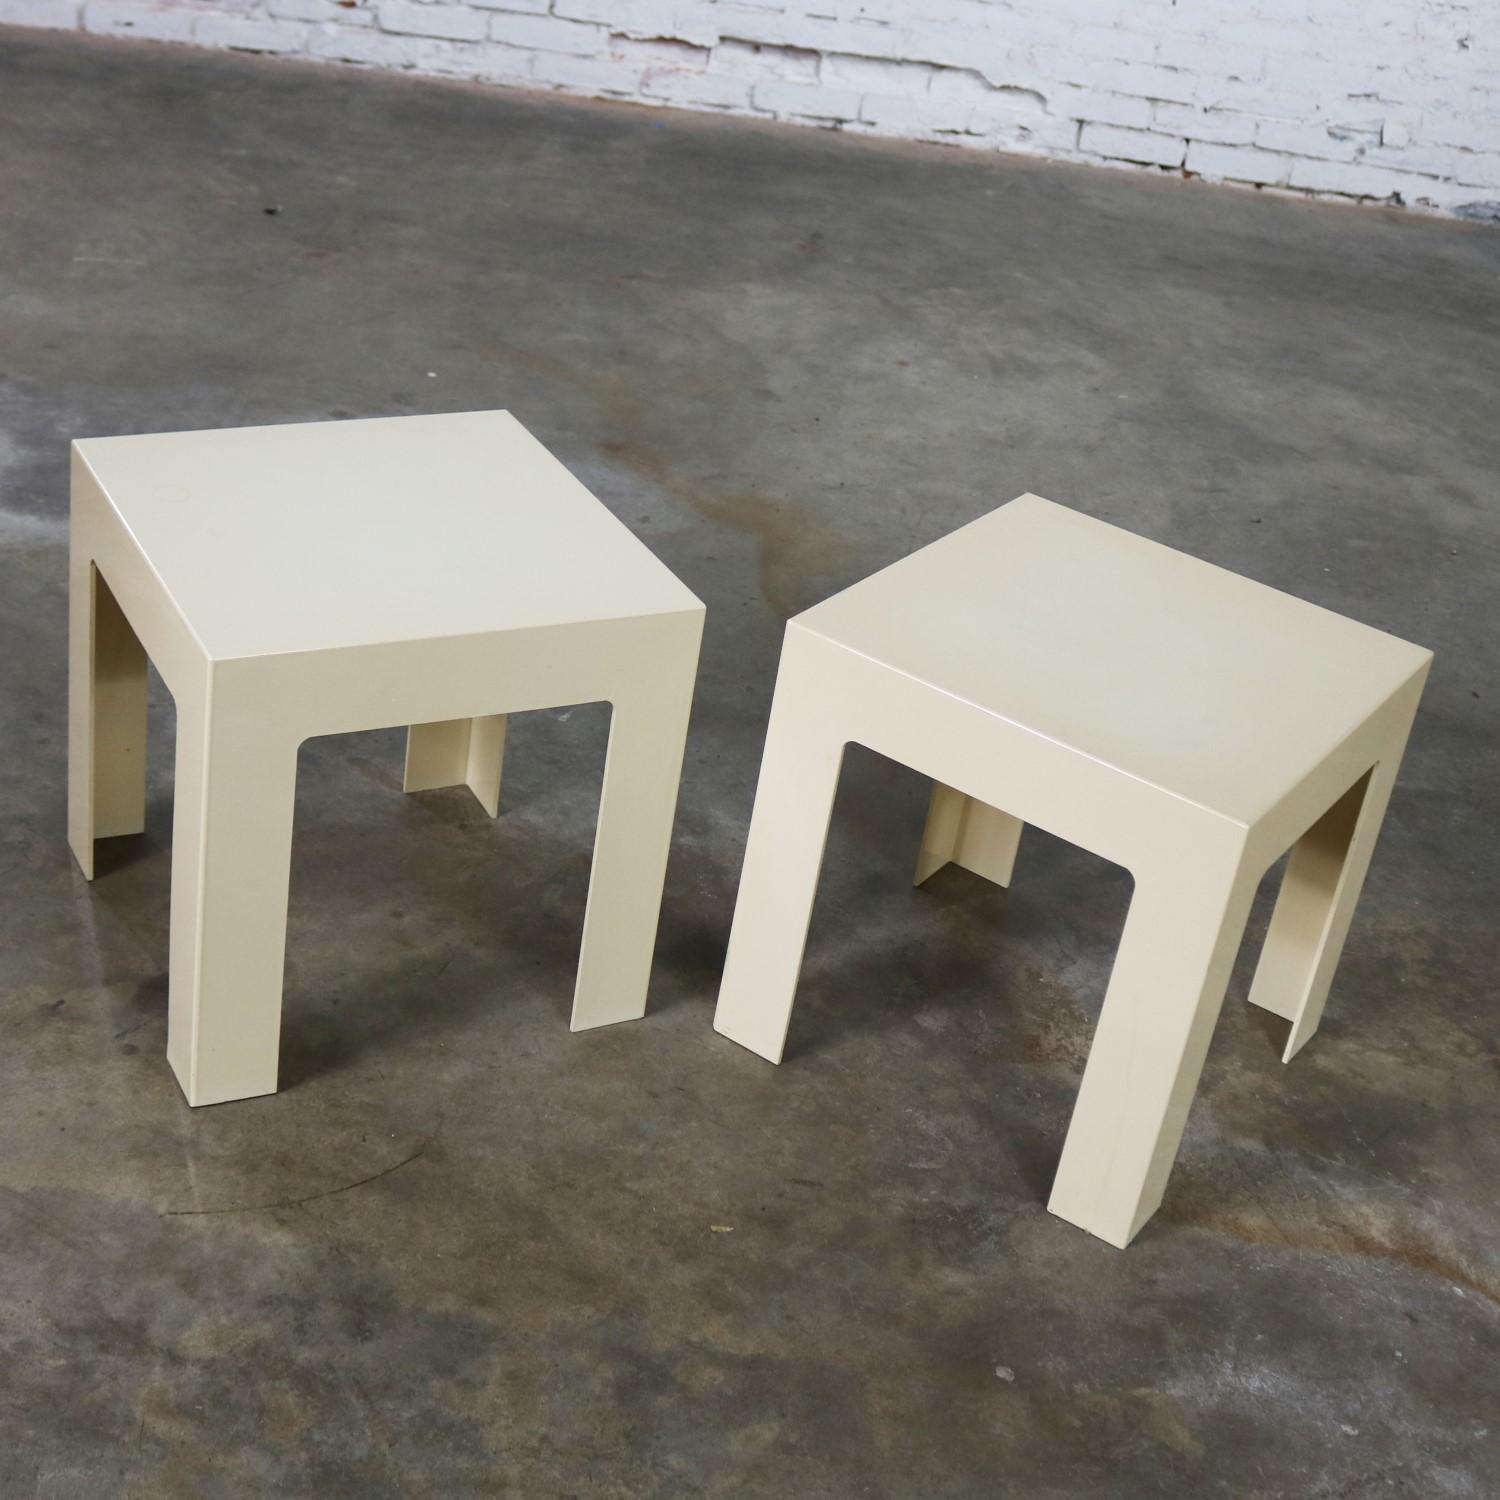 Merveilleuse paire de tables d'appoint carrées Parsons en plastique lourd. Ils sont tous deux de couleur blanc antique, mais avec une nuance différente. Réalisé dans le style de Kartell ou Syroco, bien que non signé. Elles sont dans un état vintage